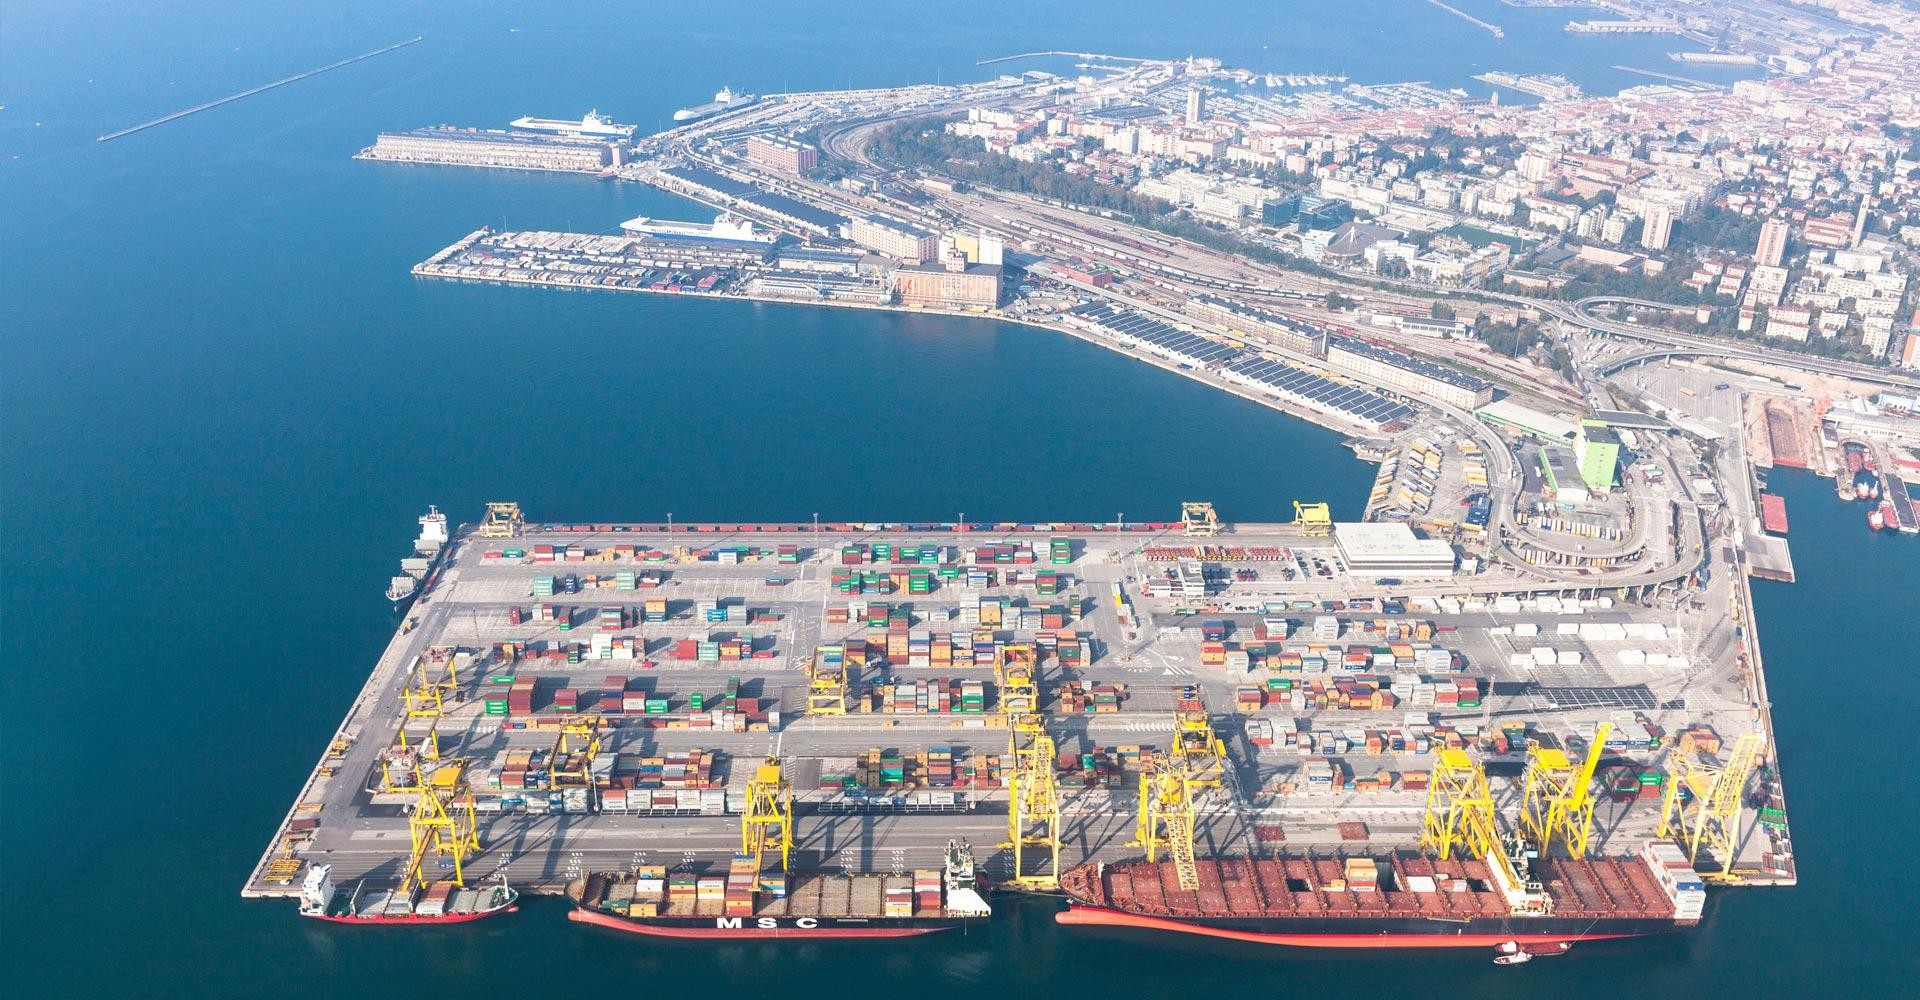 SRM e Assoporti hanno fornito una panoramica dei parametri economici collegati allo sviluppo del trasporto marittimo per seguirne l’osservazione nel tempo